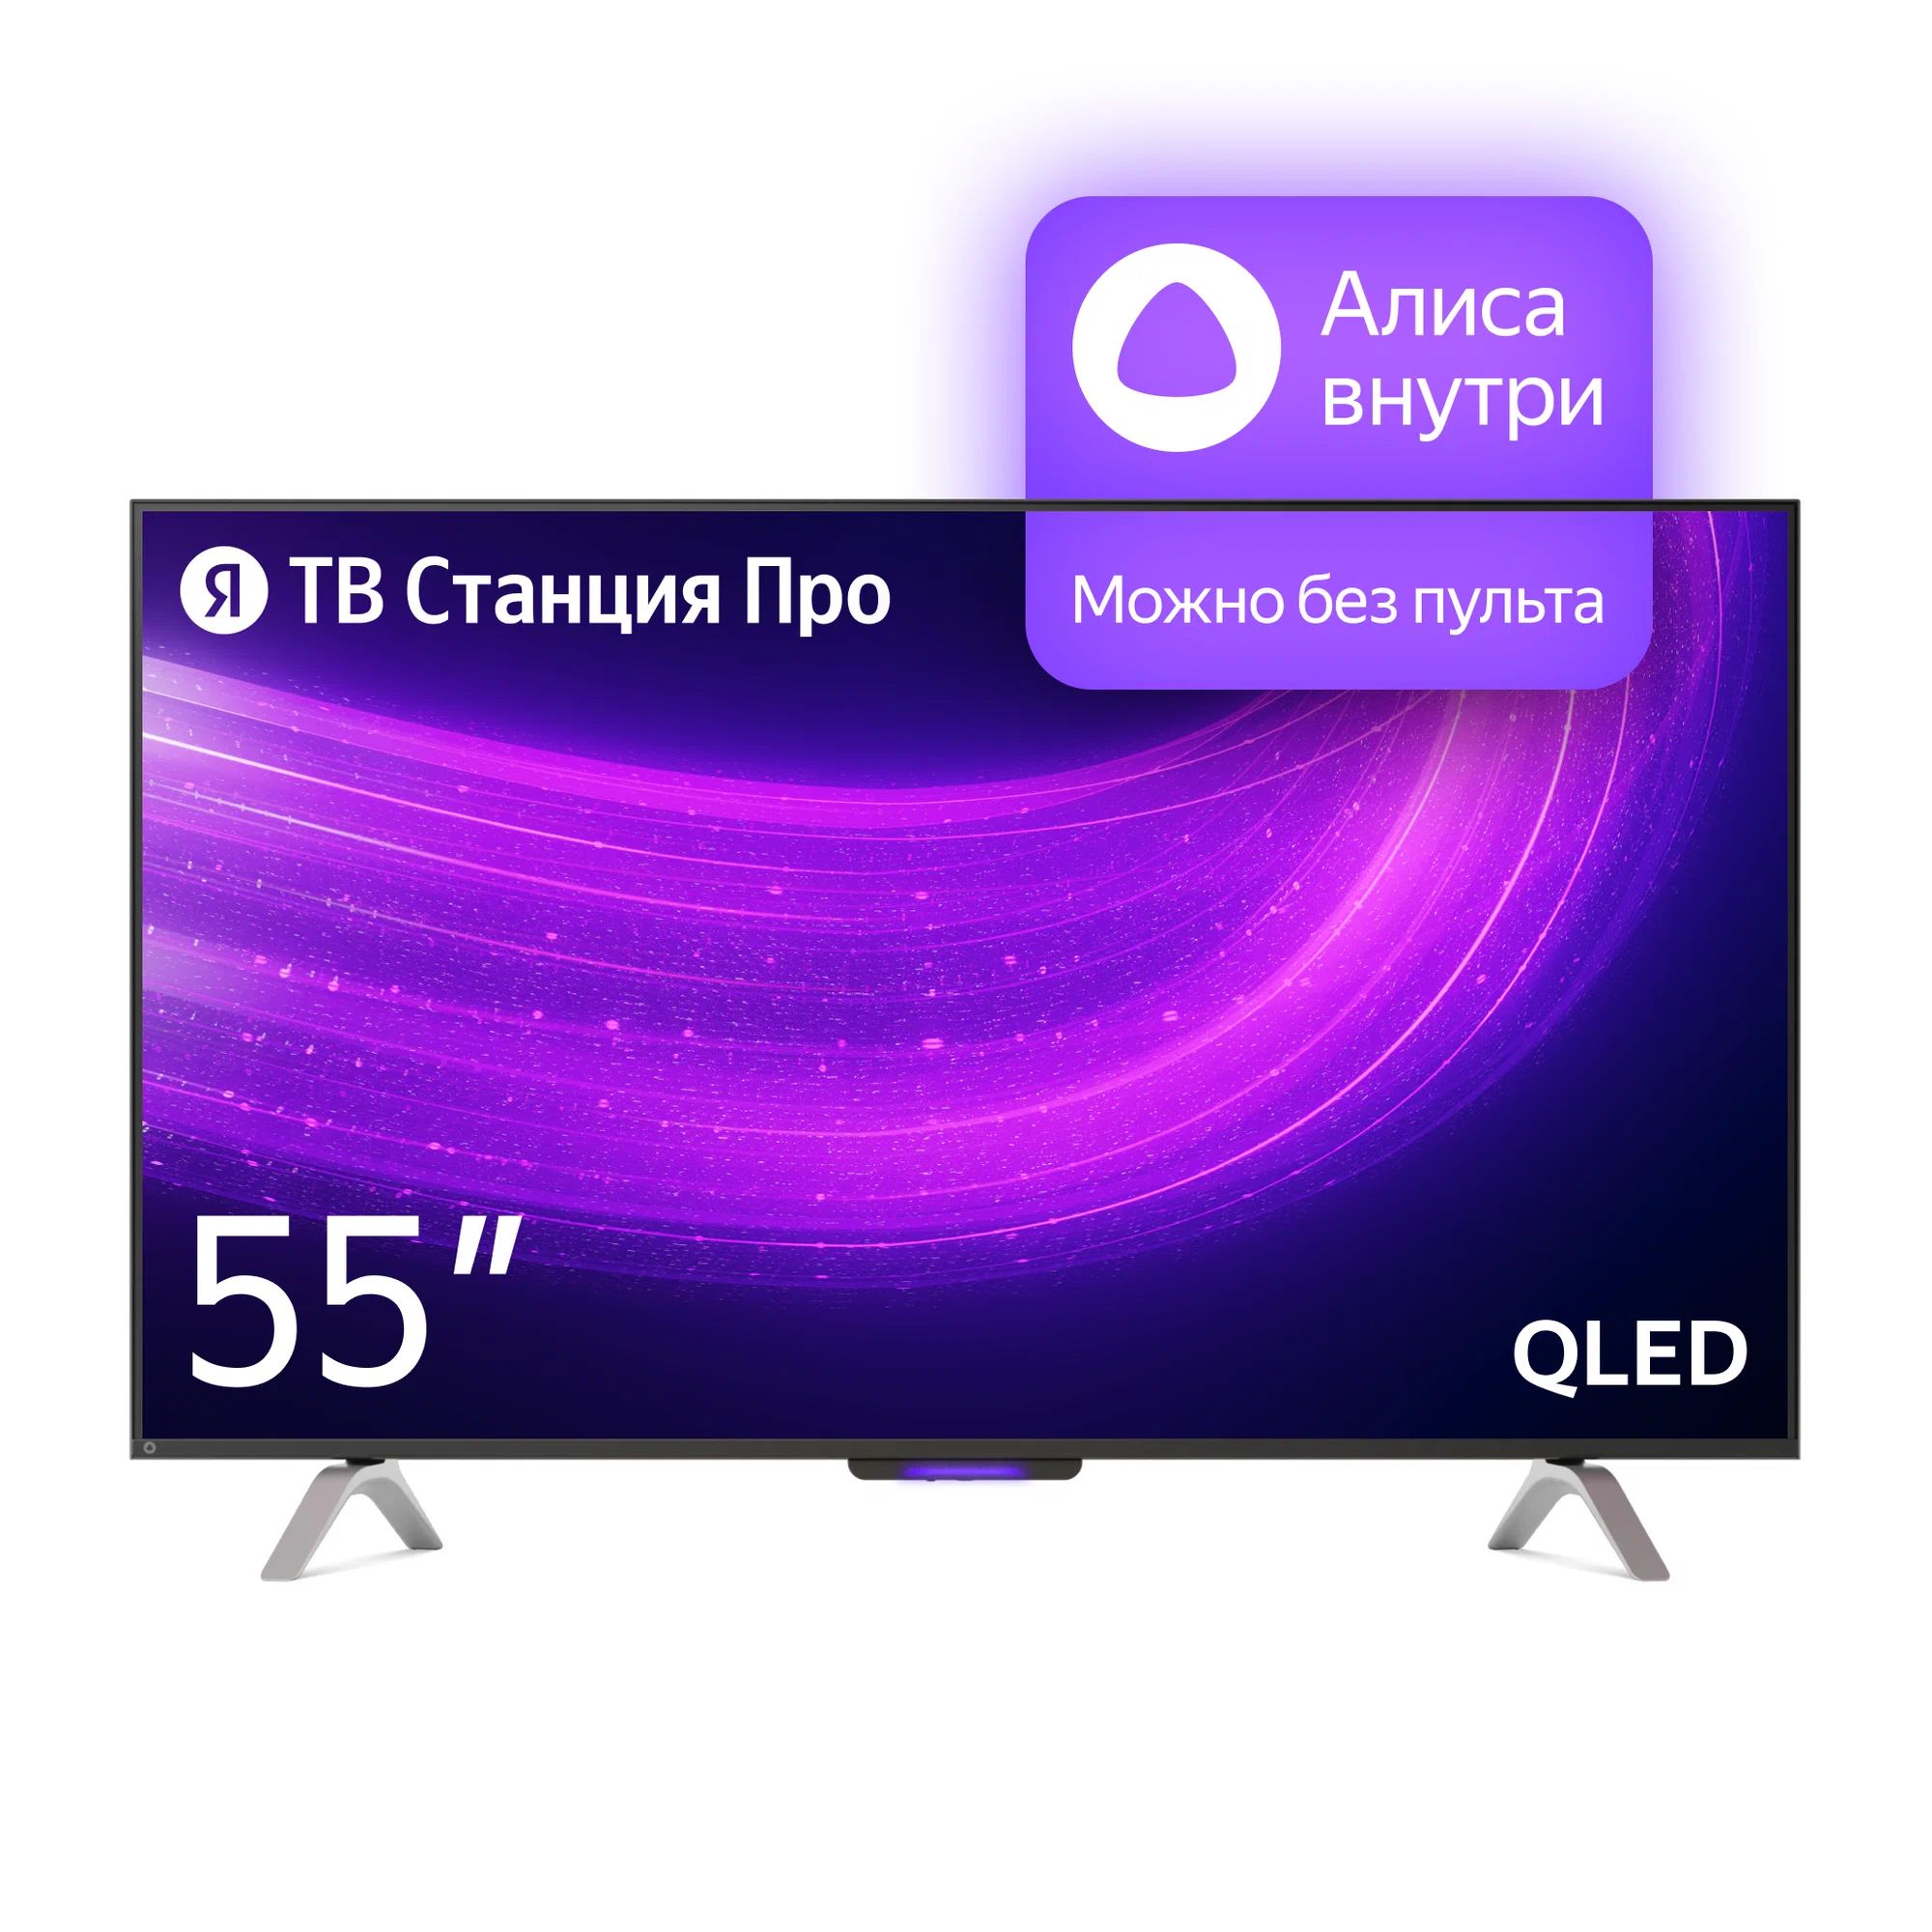 Телевизор Яндекс YNDX-00101 PRO Тв станция с Алисой 55 телевизор яндекс 65 тв станция с алисой yndx 00102